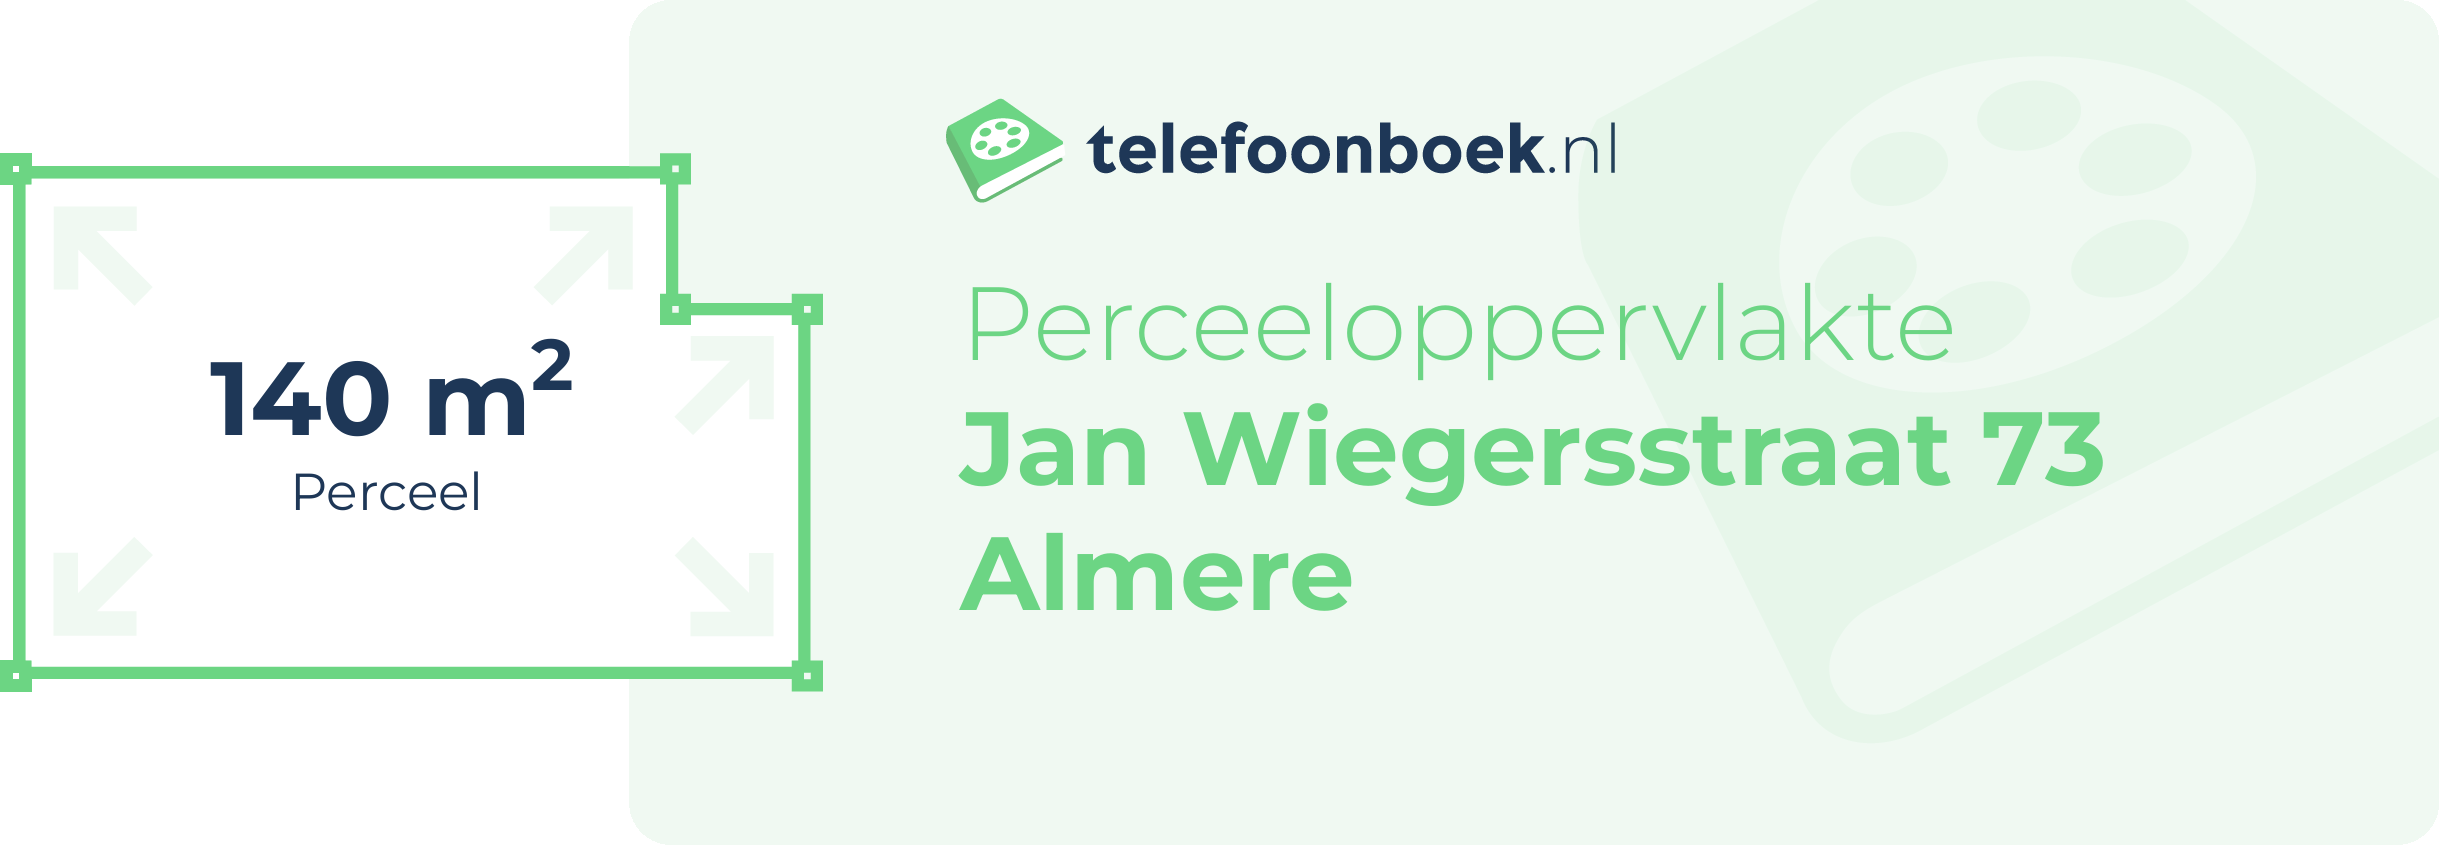 Perceeloppervlakte Jan Wiegersstraat 73 Almere